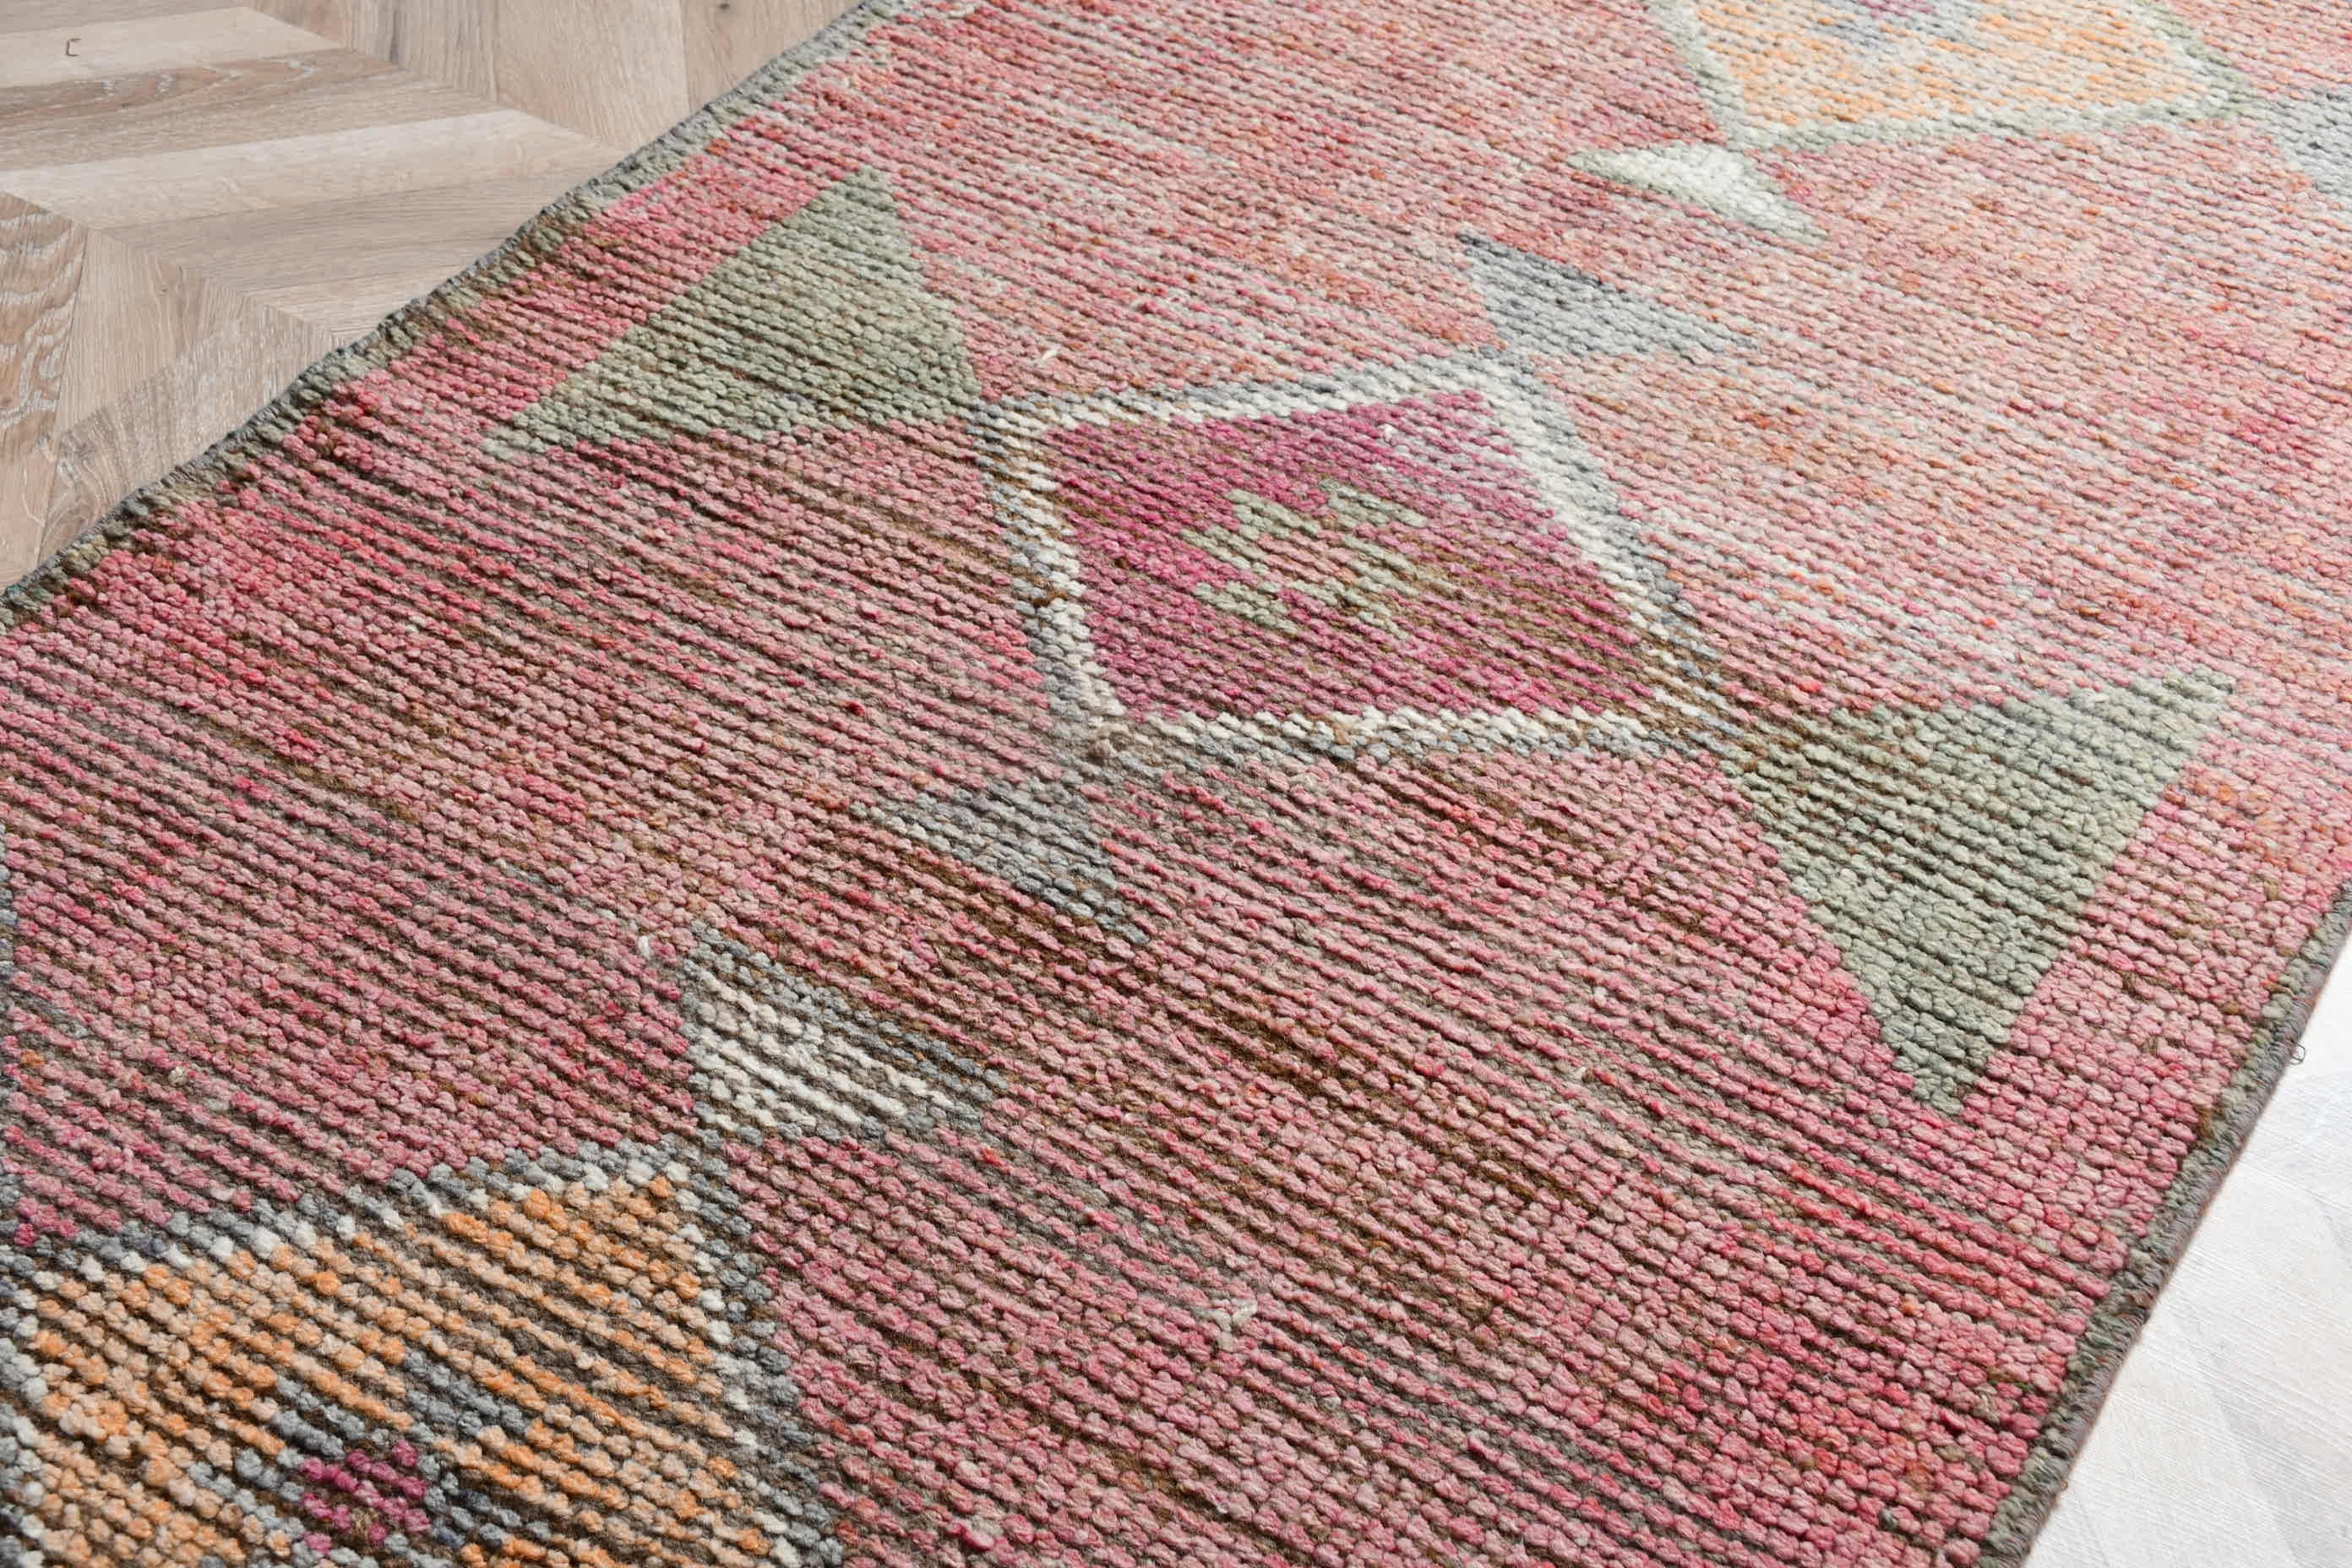 Turkish Rugs, Pink Floor Rug, Kitchen Rug, Antique Rug, Rugs for Corridor, Floor Rug, 2.8x11.2 ft Runner Rug, Stair Rug, Vintage Rugs